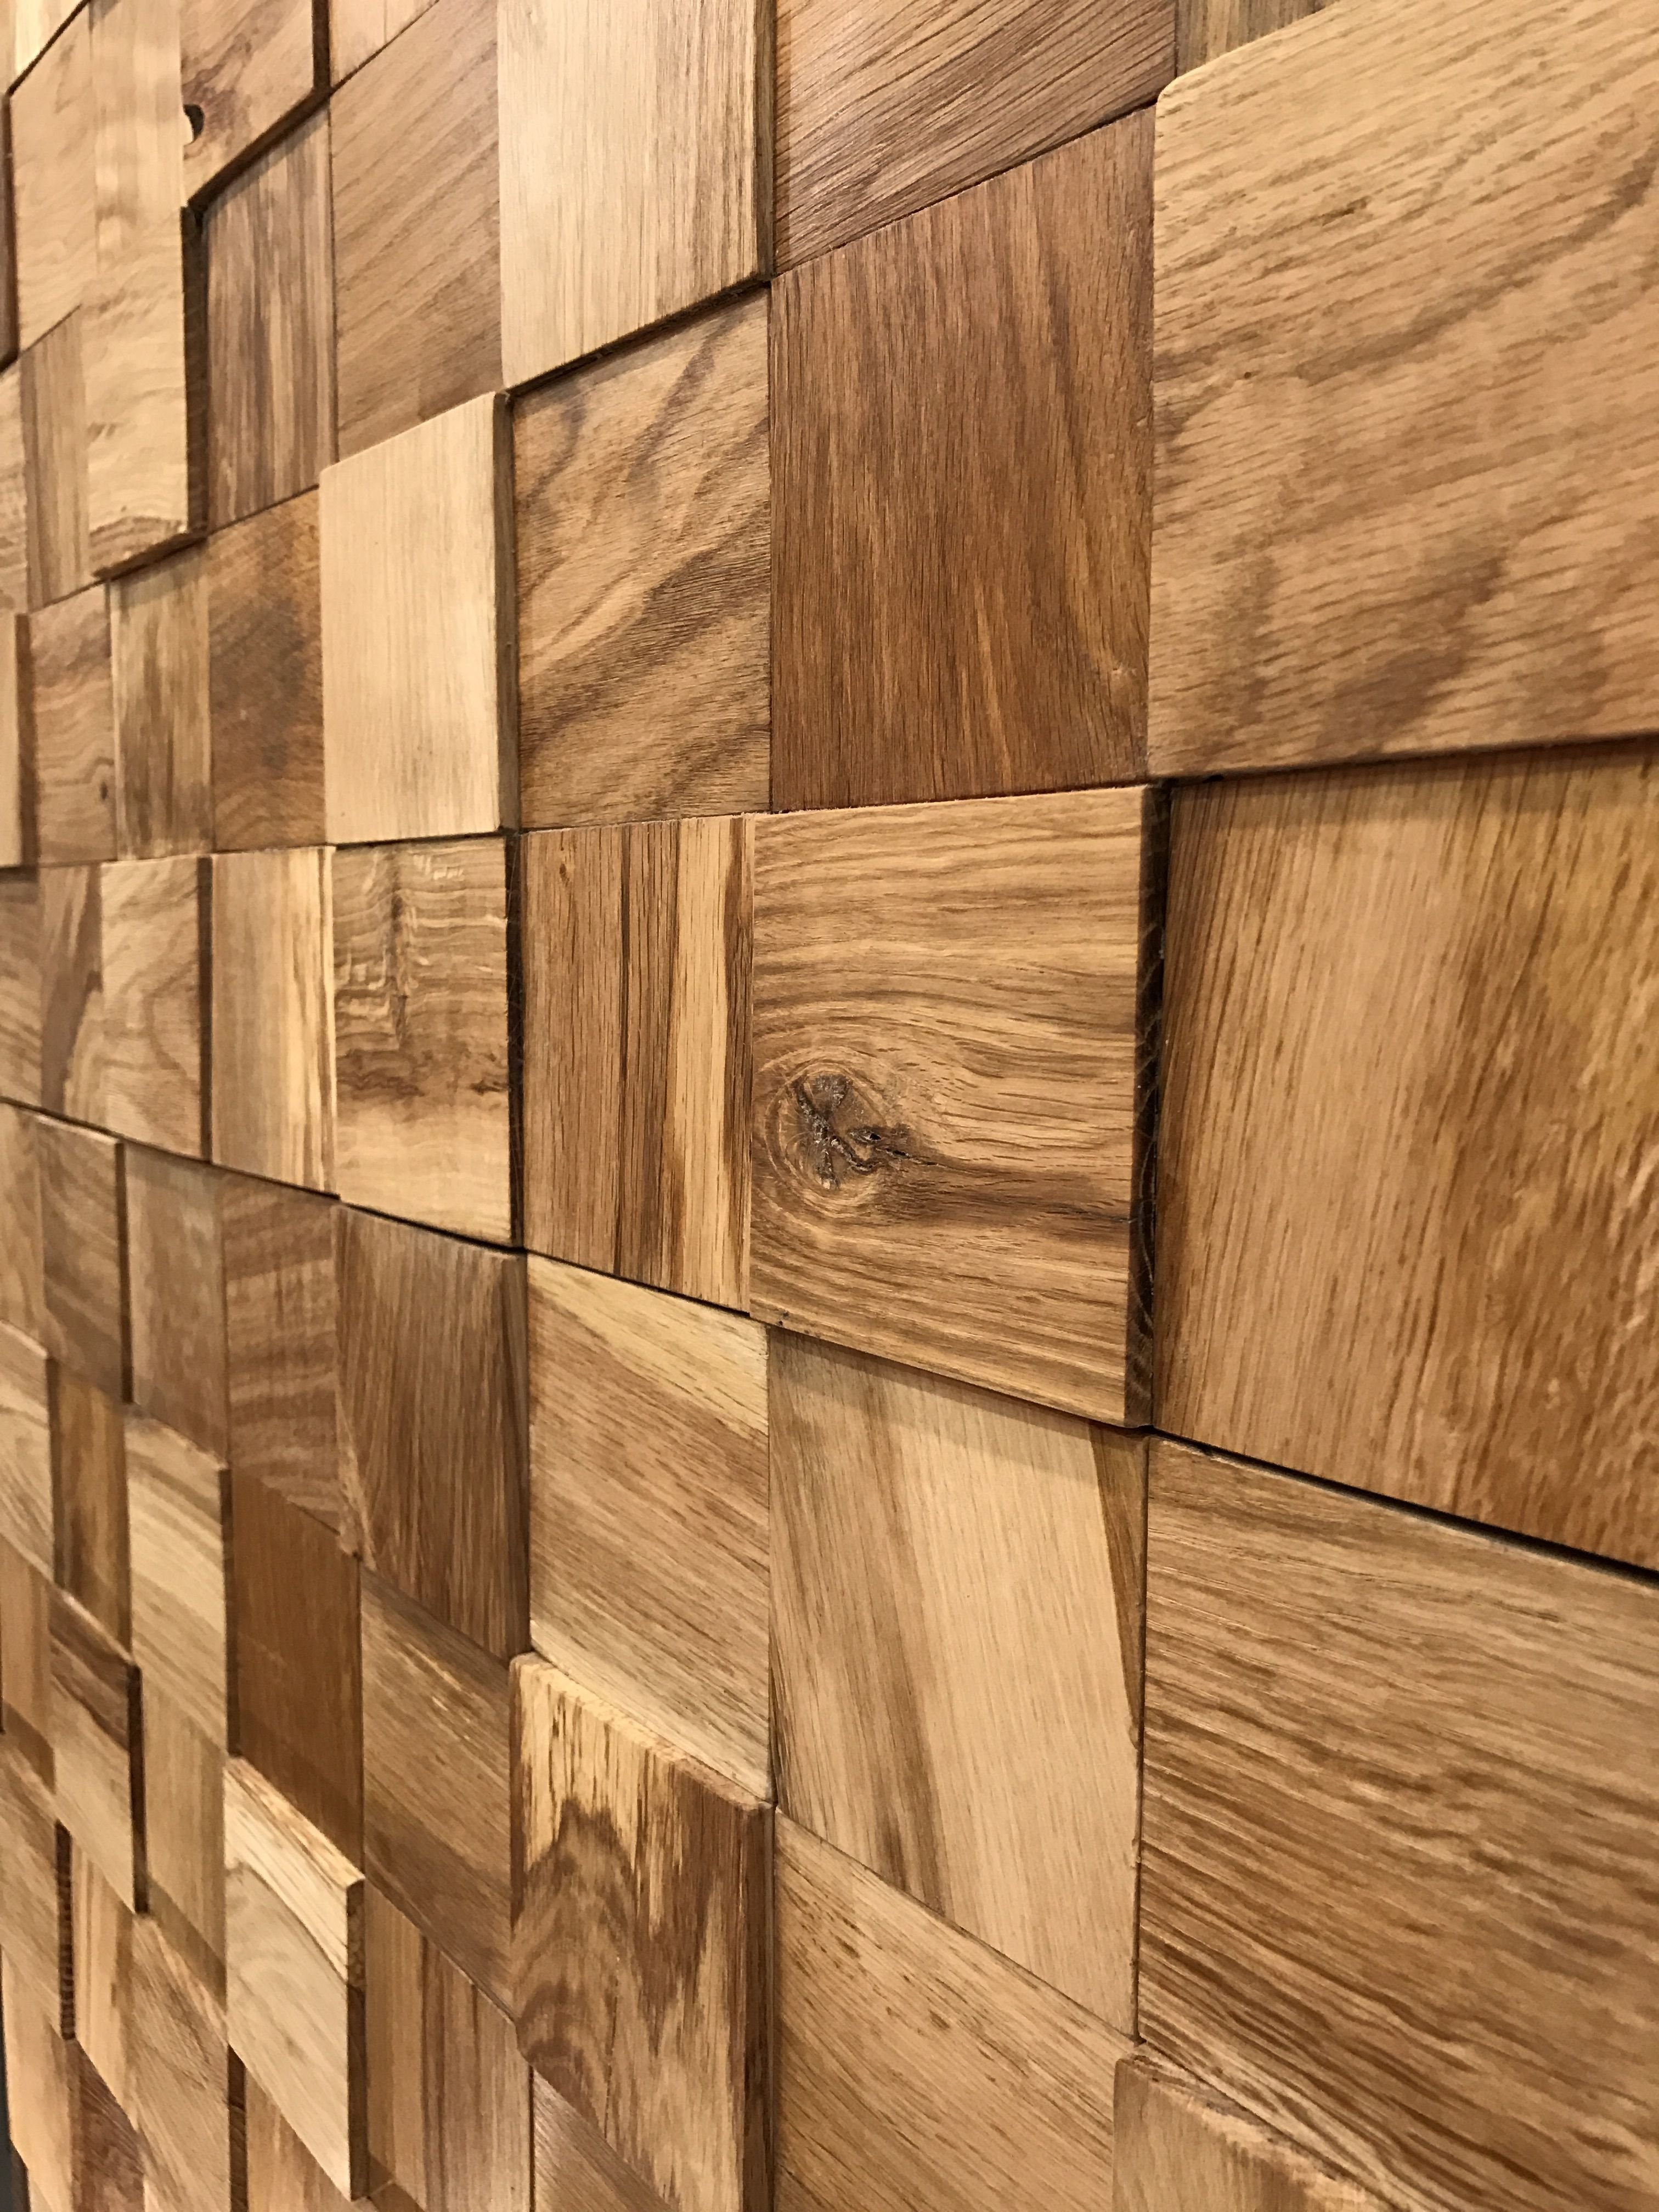 Стеновая панель wood. Шпонированные панели Topperfo Micro Ulme Stone Edition Acoustic Wood Panel. Деревянная плитка для стен. Декоративные деревянные панели. Деревянная палетка на стену.